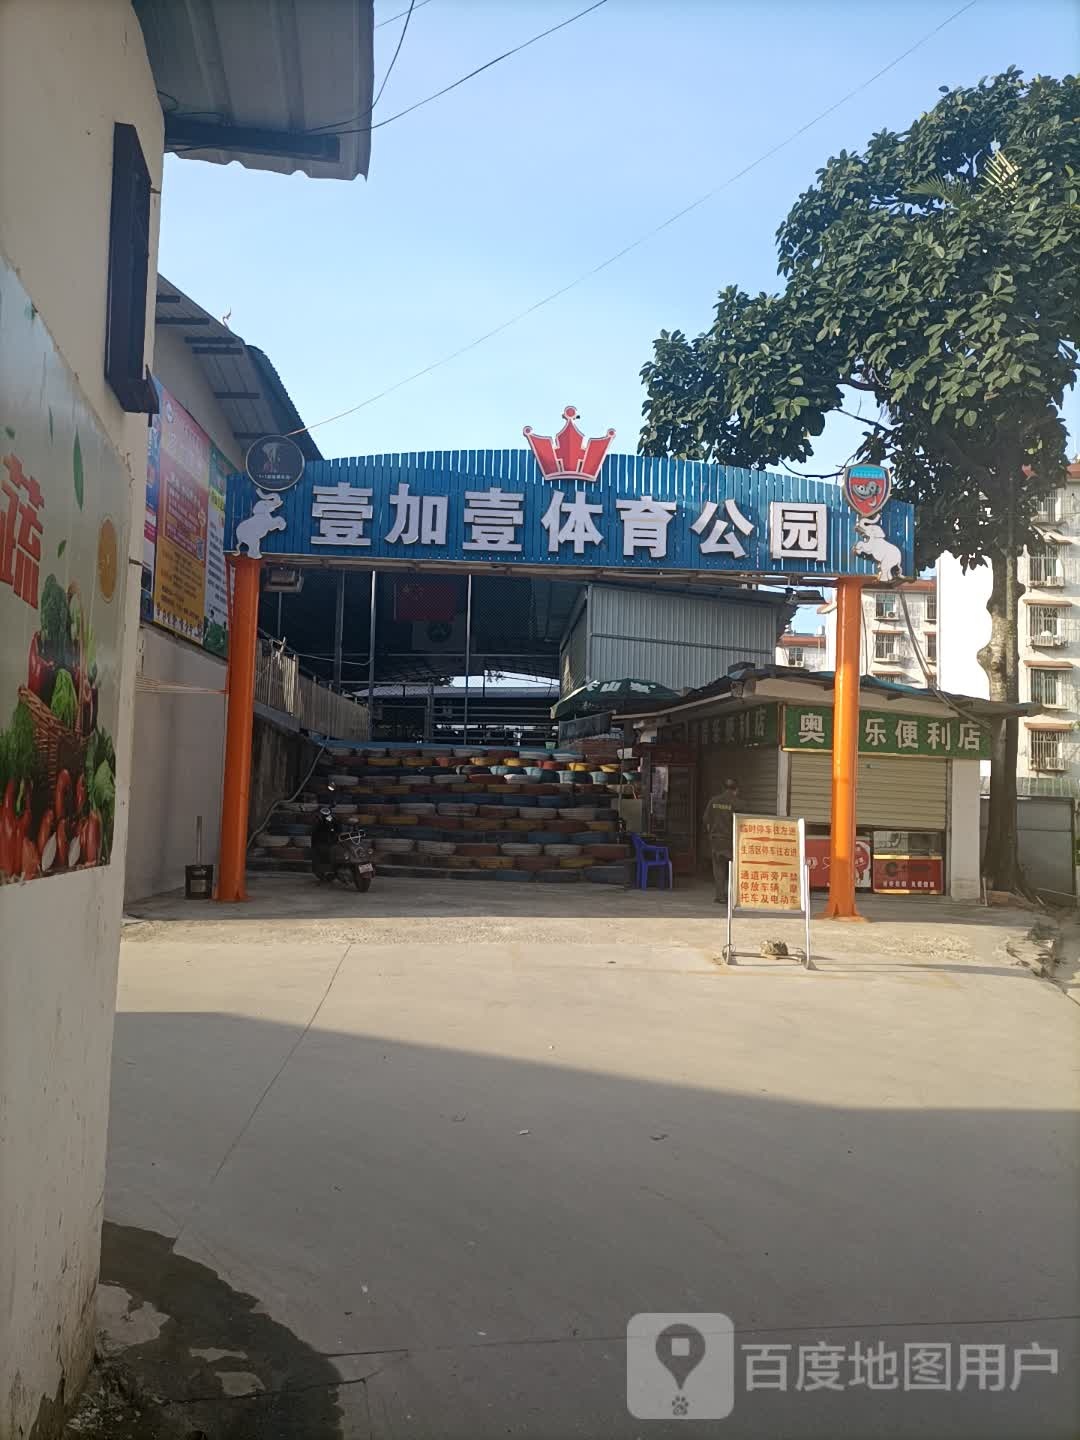 壹加壹体育公园